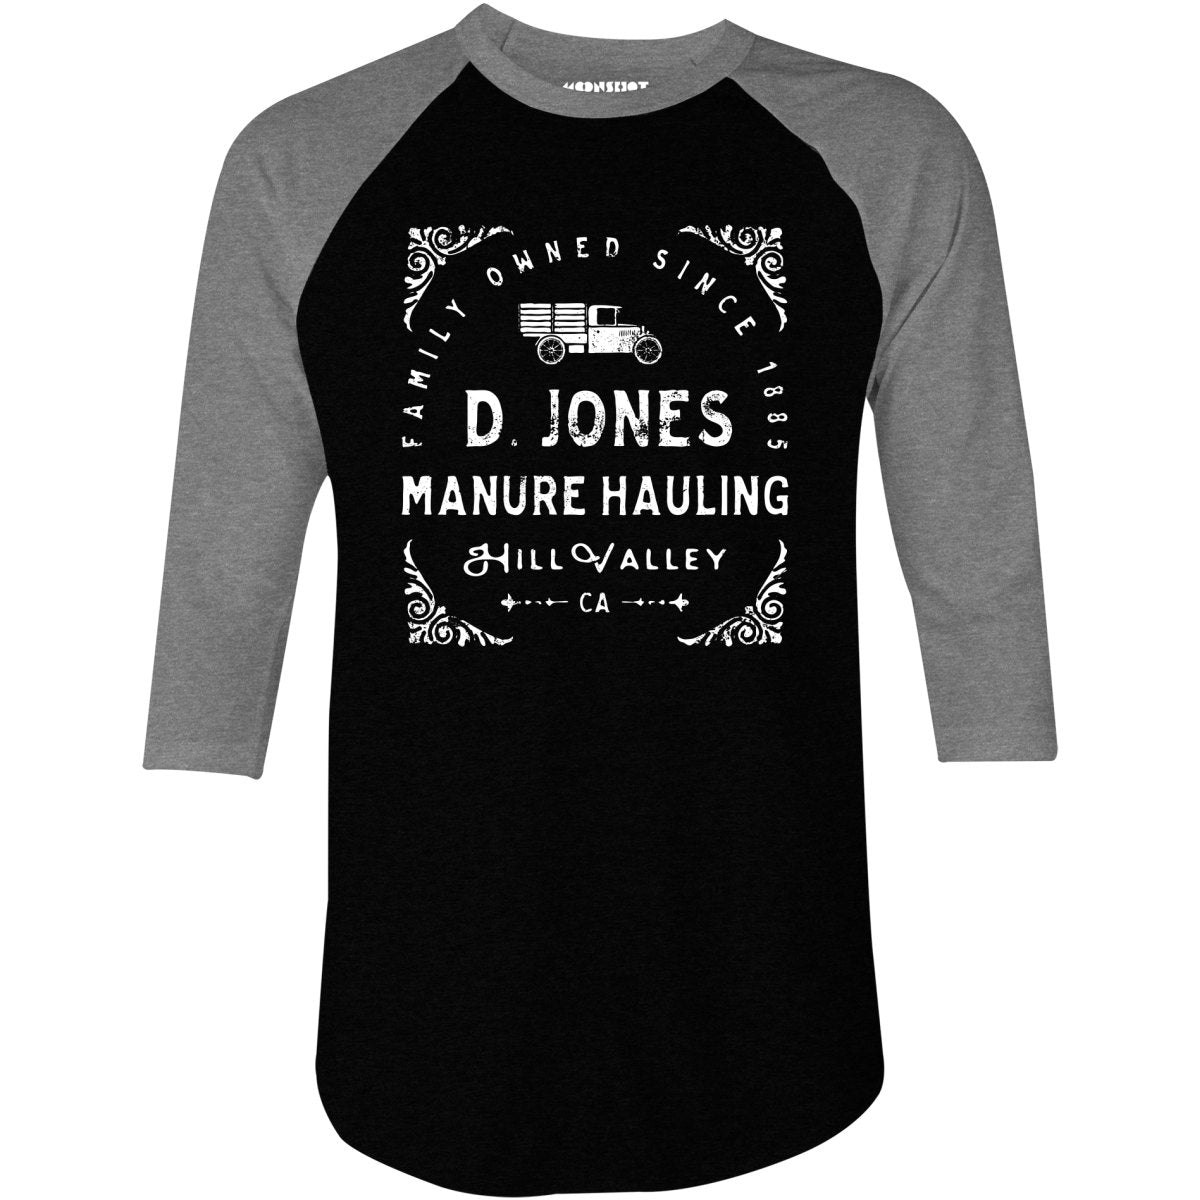 D. Jones Manure Hauling - Hill Valley - 3/4 Sleeve Raglan T-Shirt